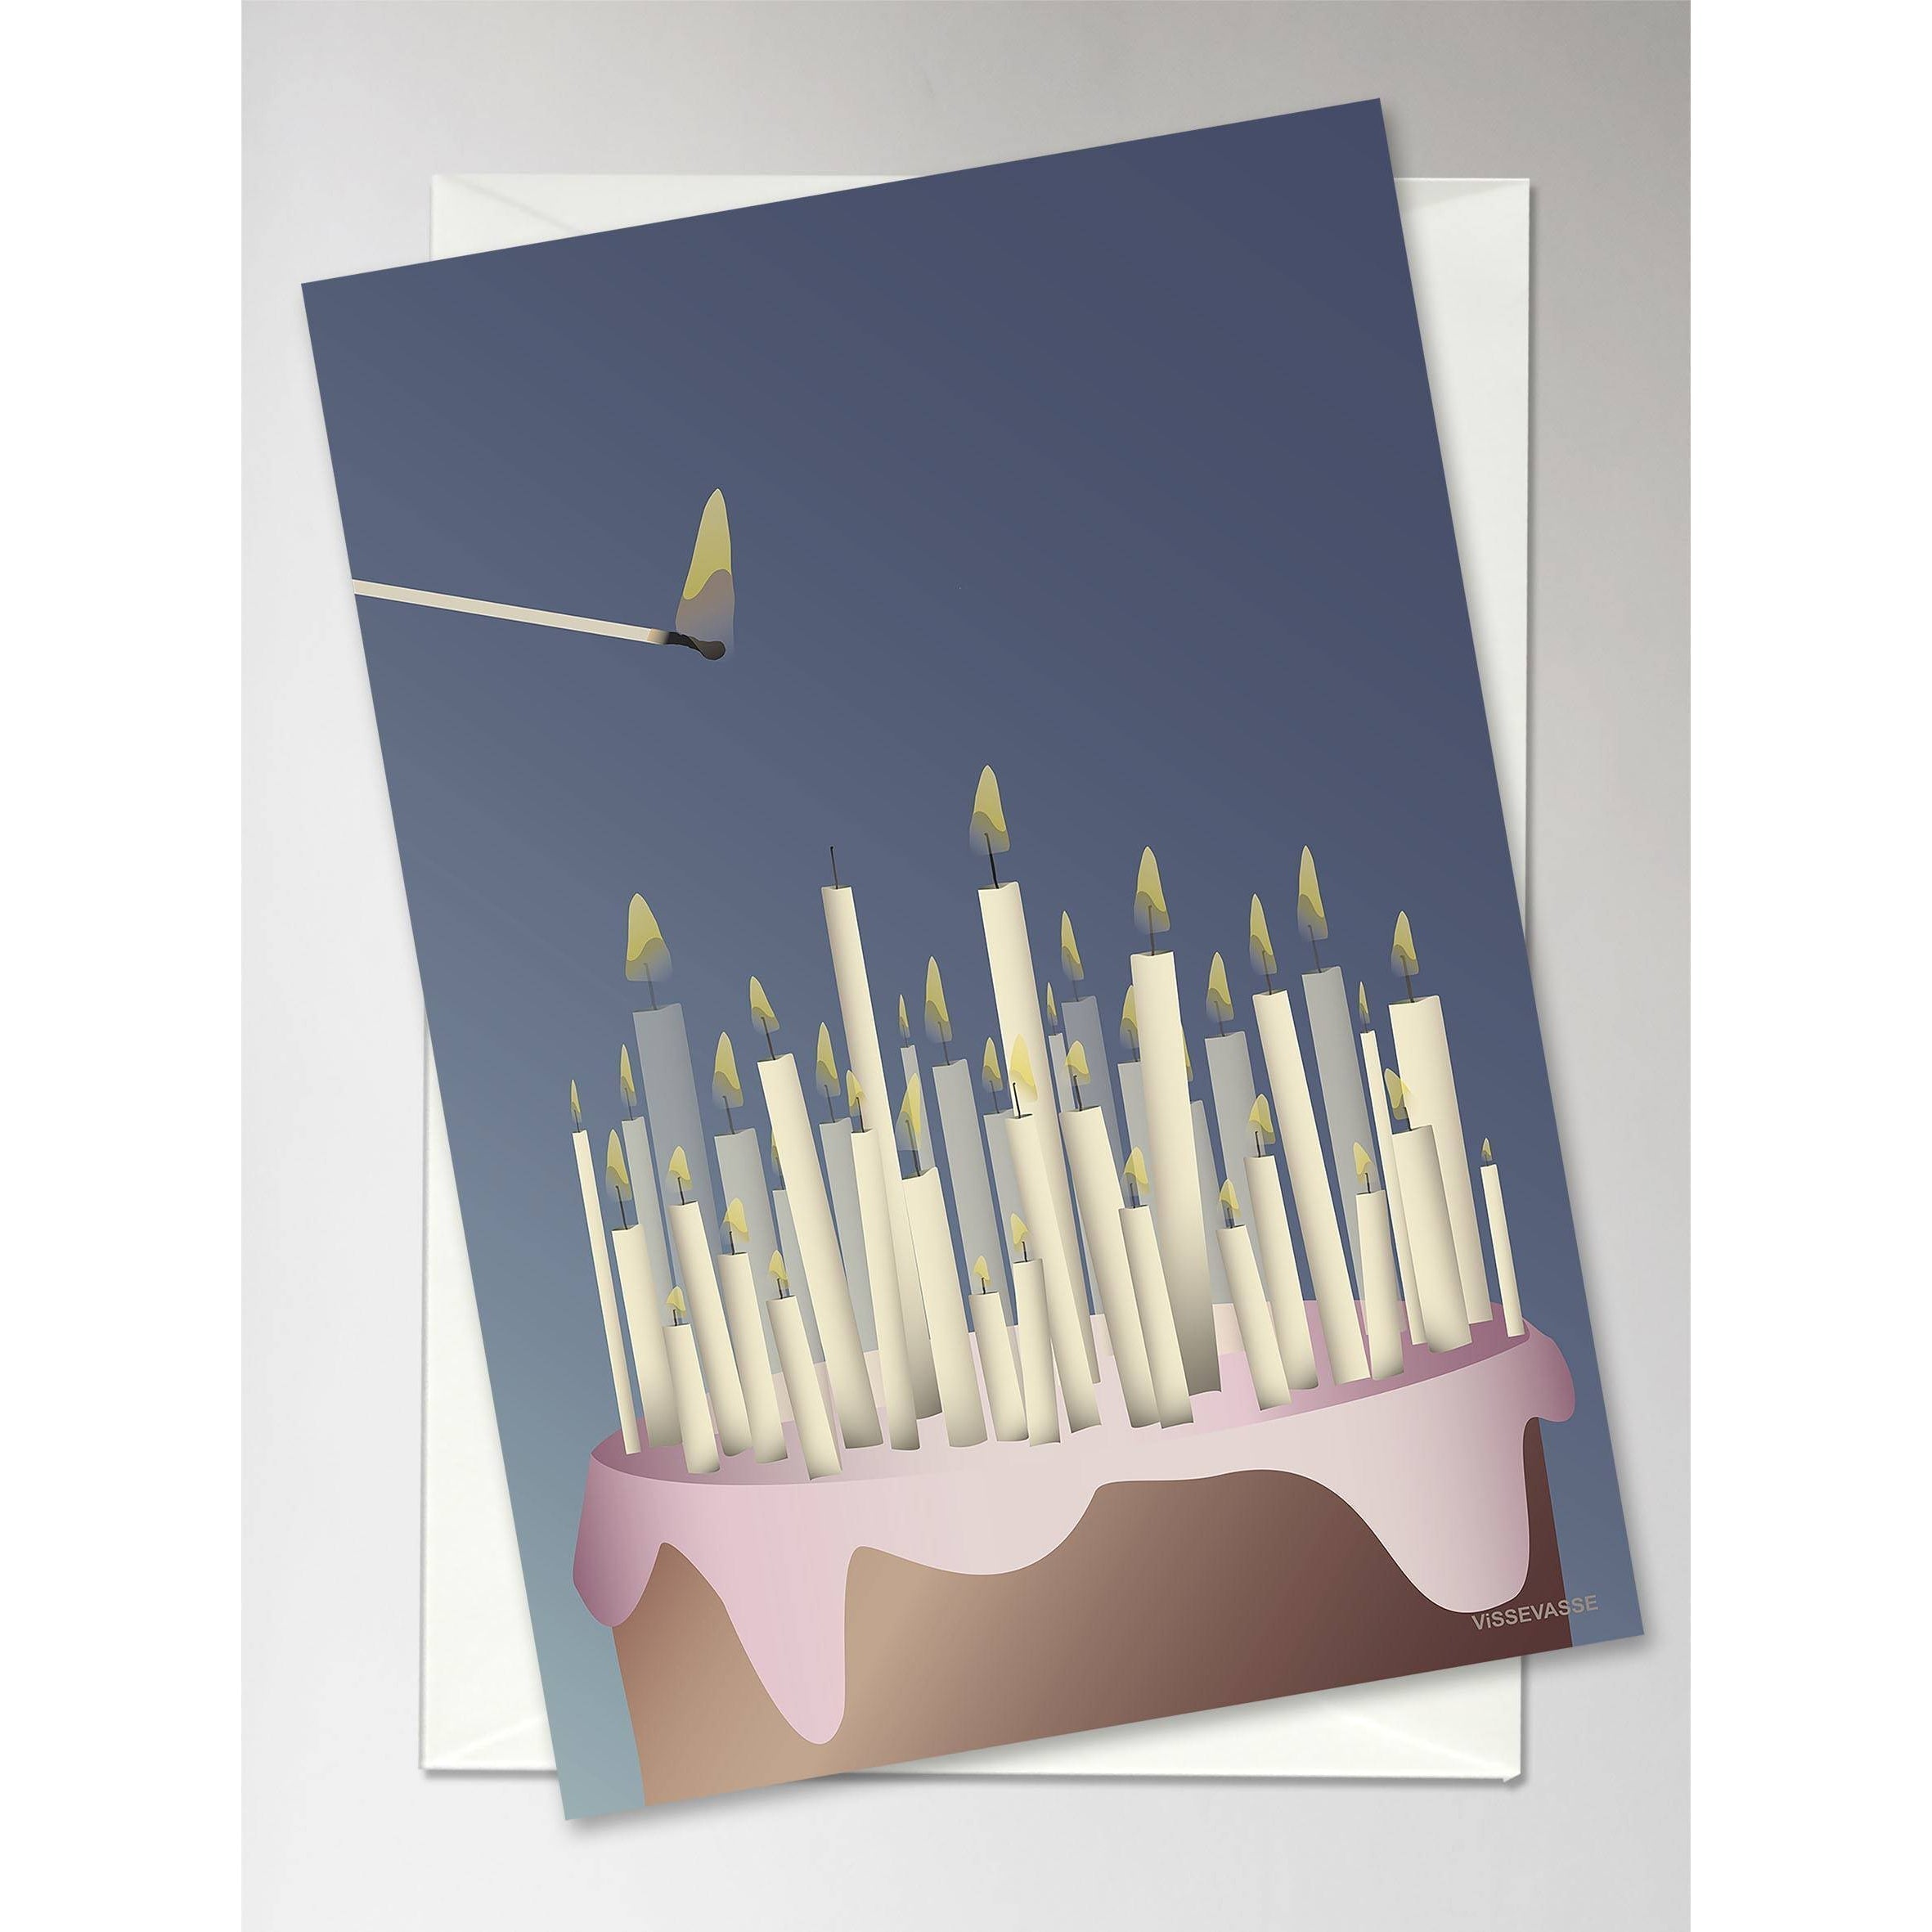 Pastel Vissevasse con velas Tarjeta de felicitación, 10.5 x15 cm